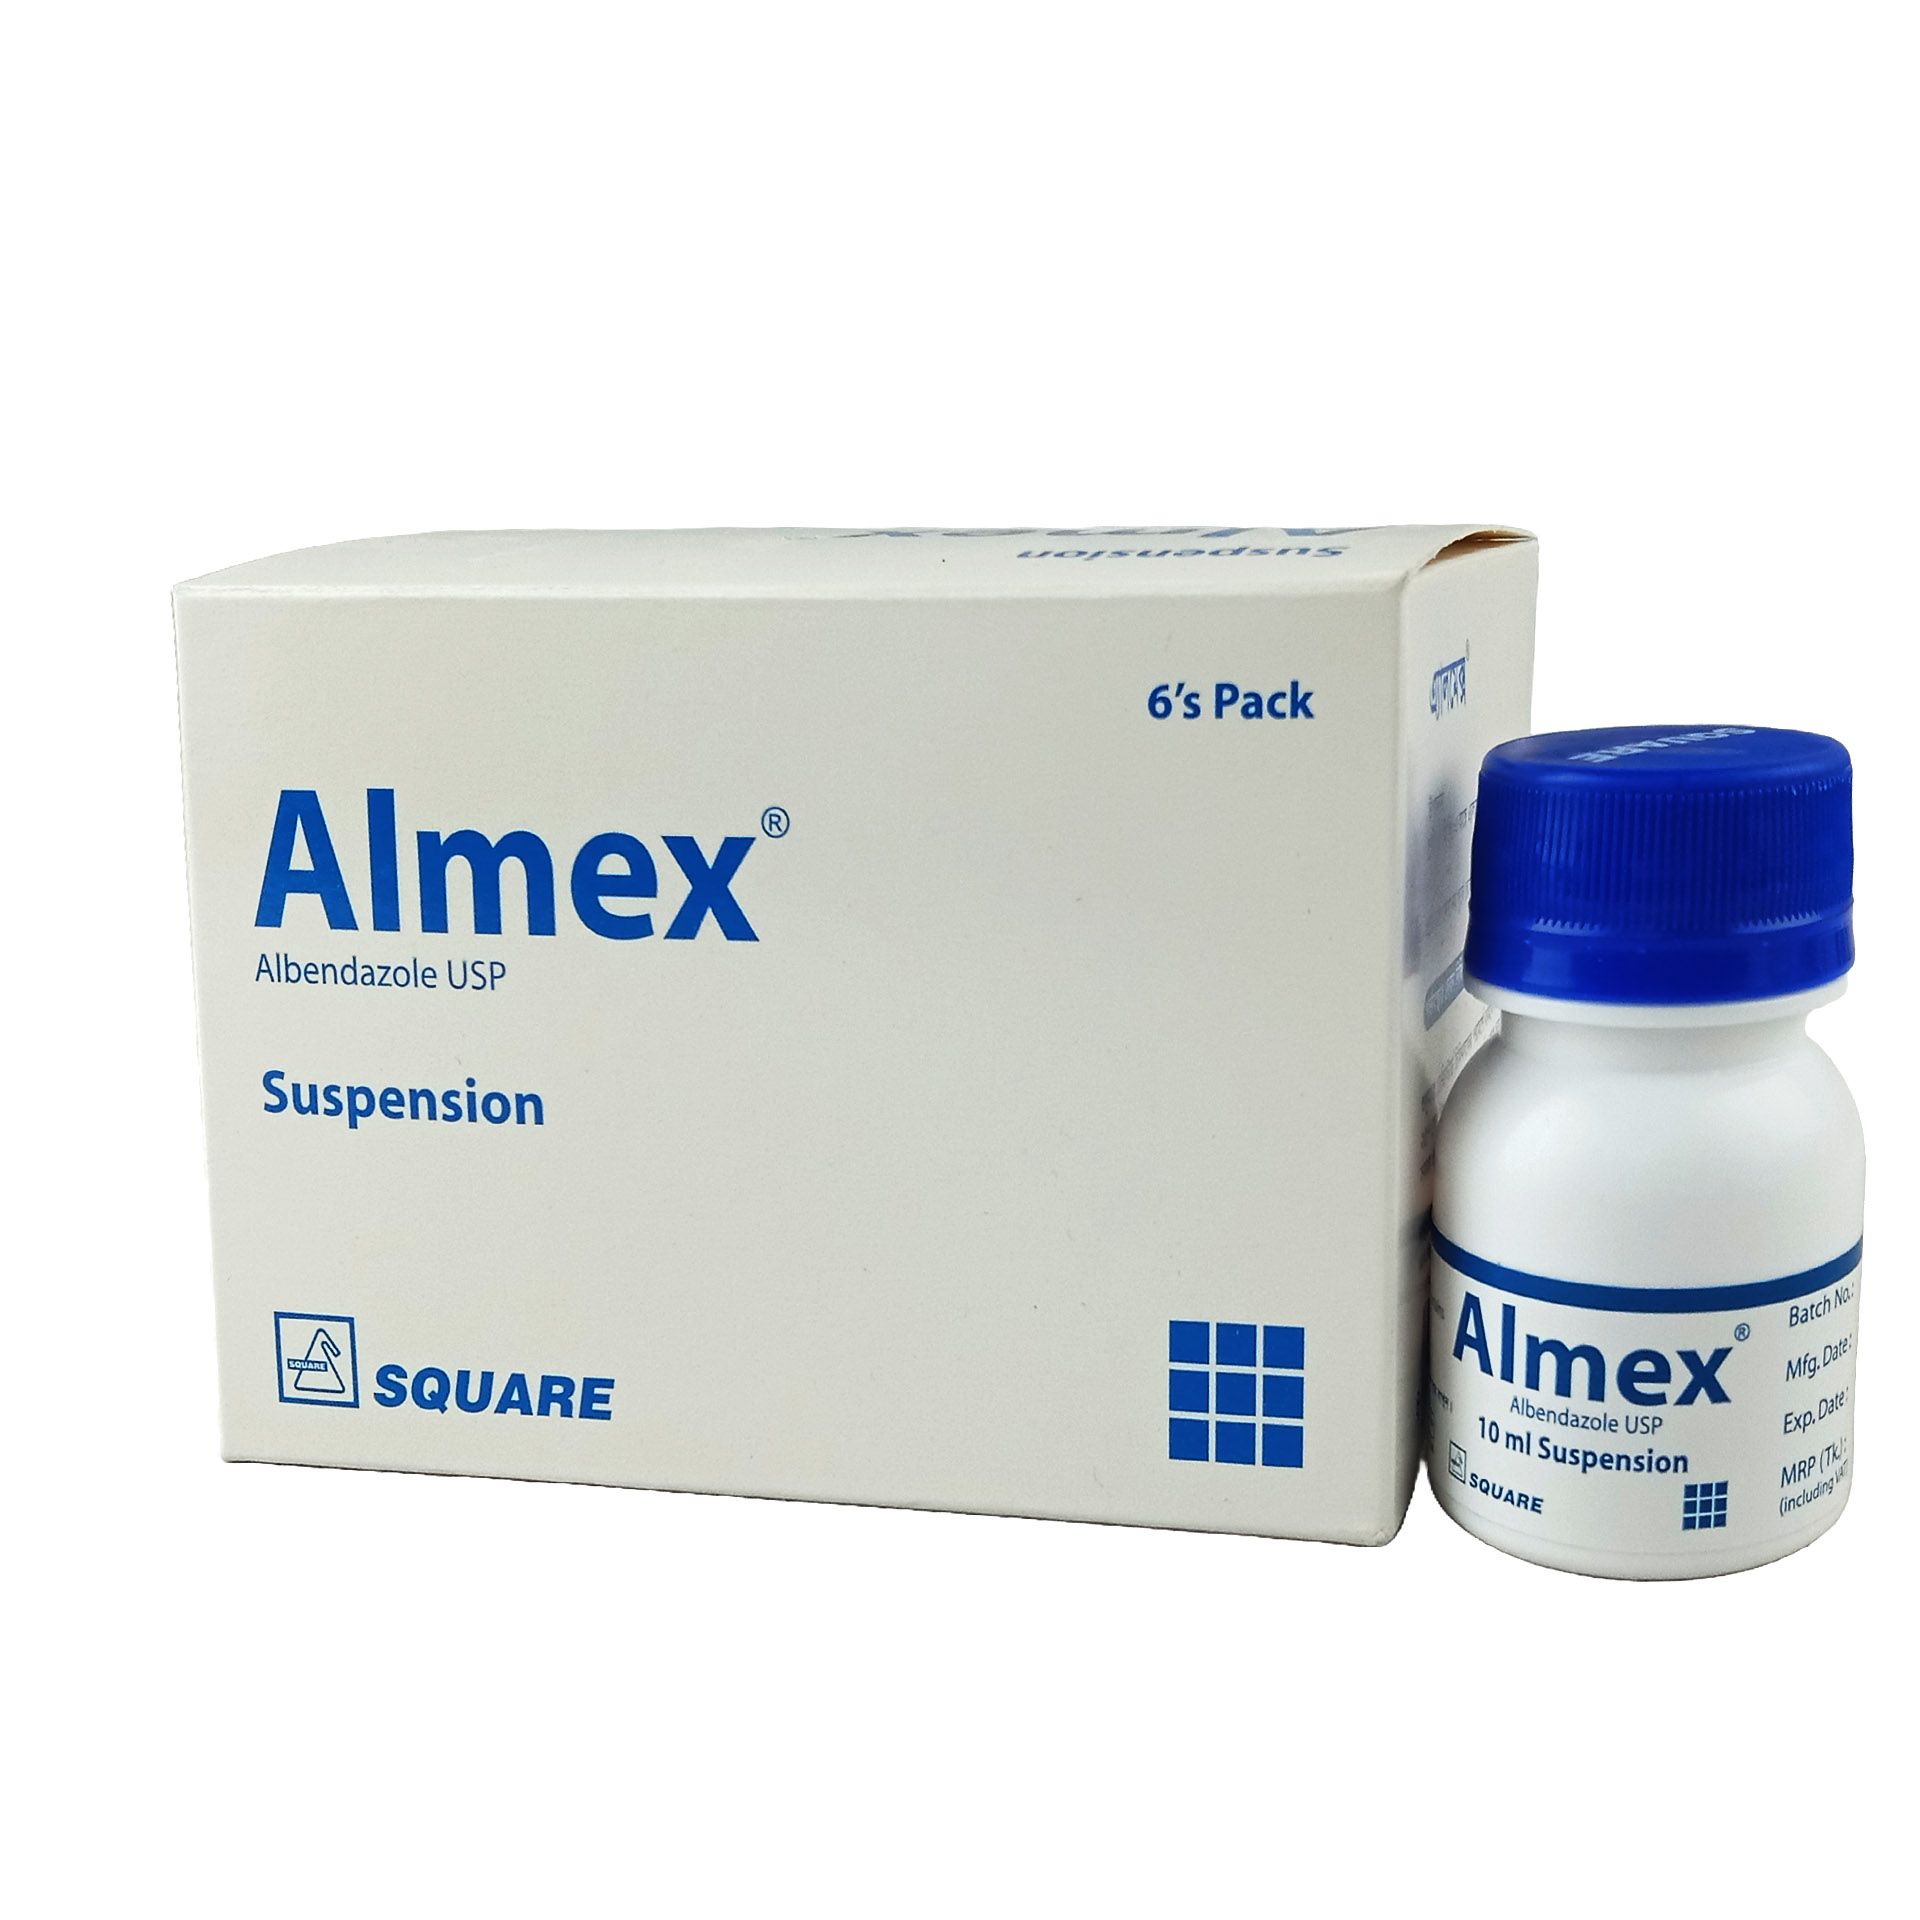 Almex 200mg/5ml Suspension